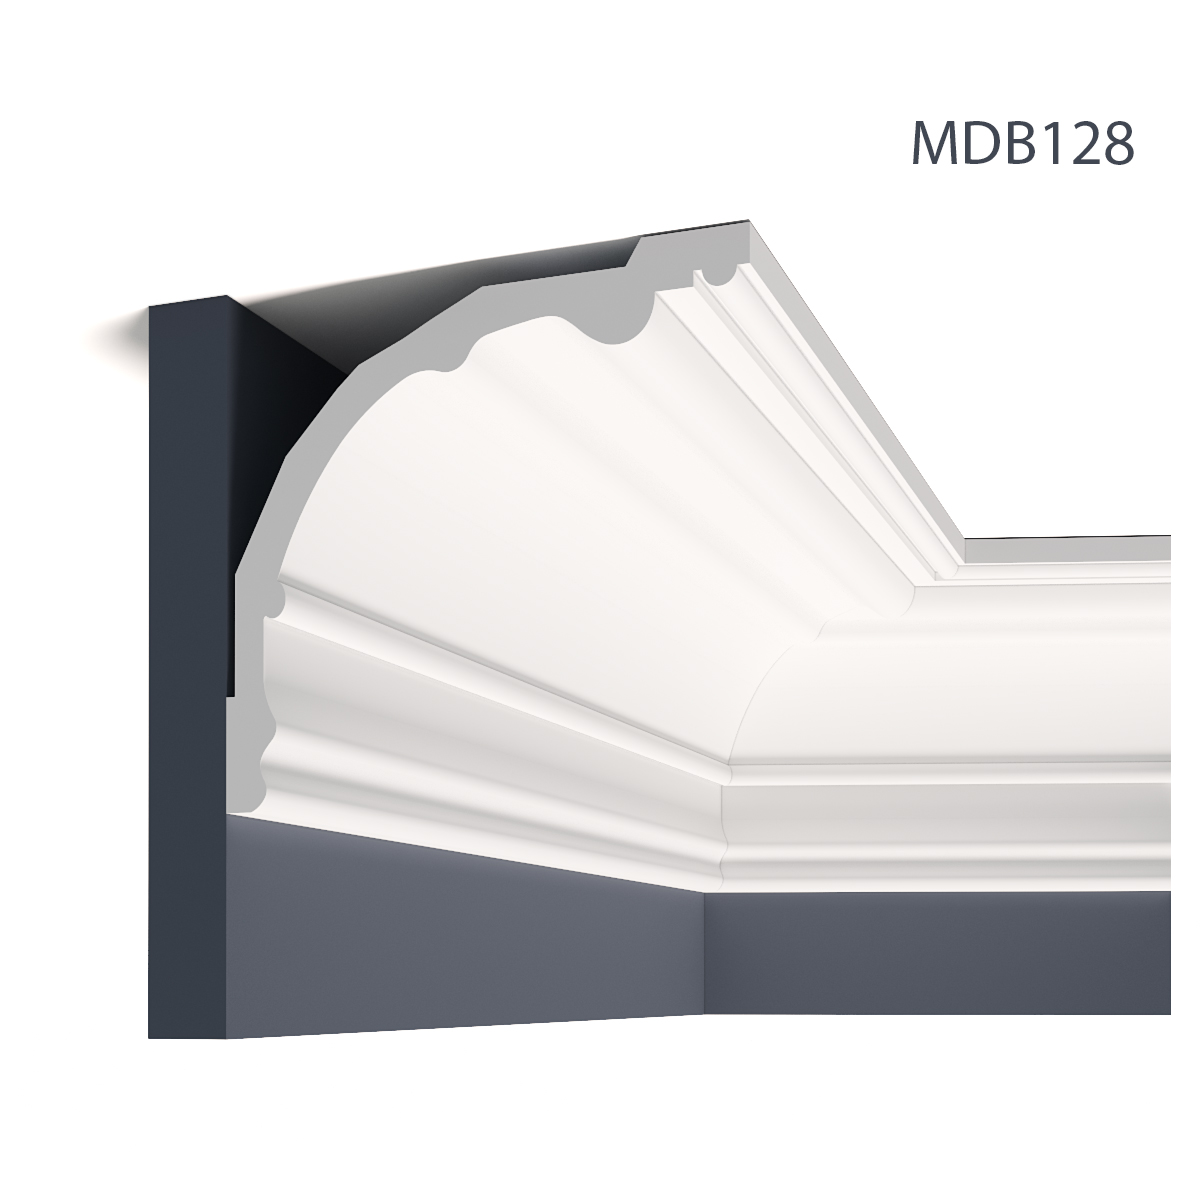 Profile Decorative Mardom Decor MRD-MDB128. Conține culorile: